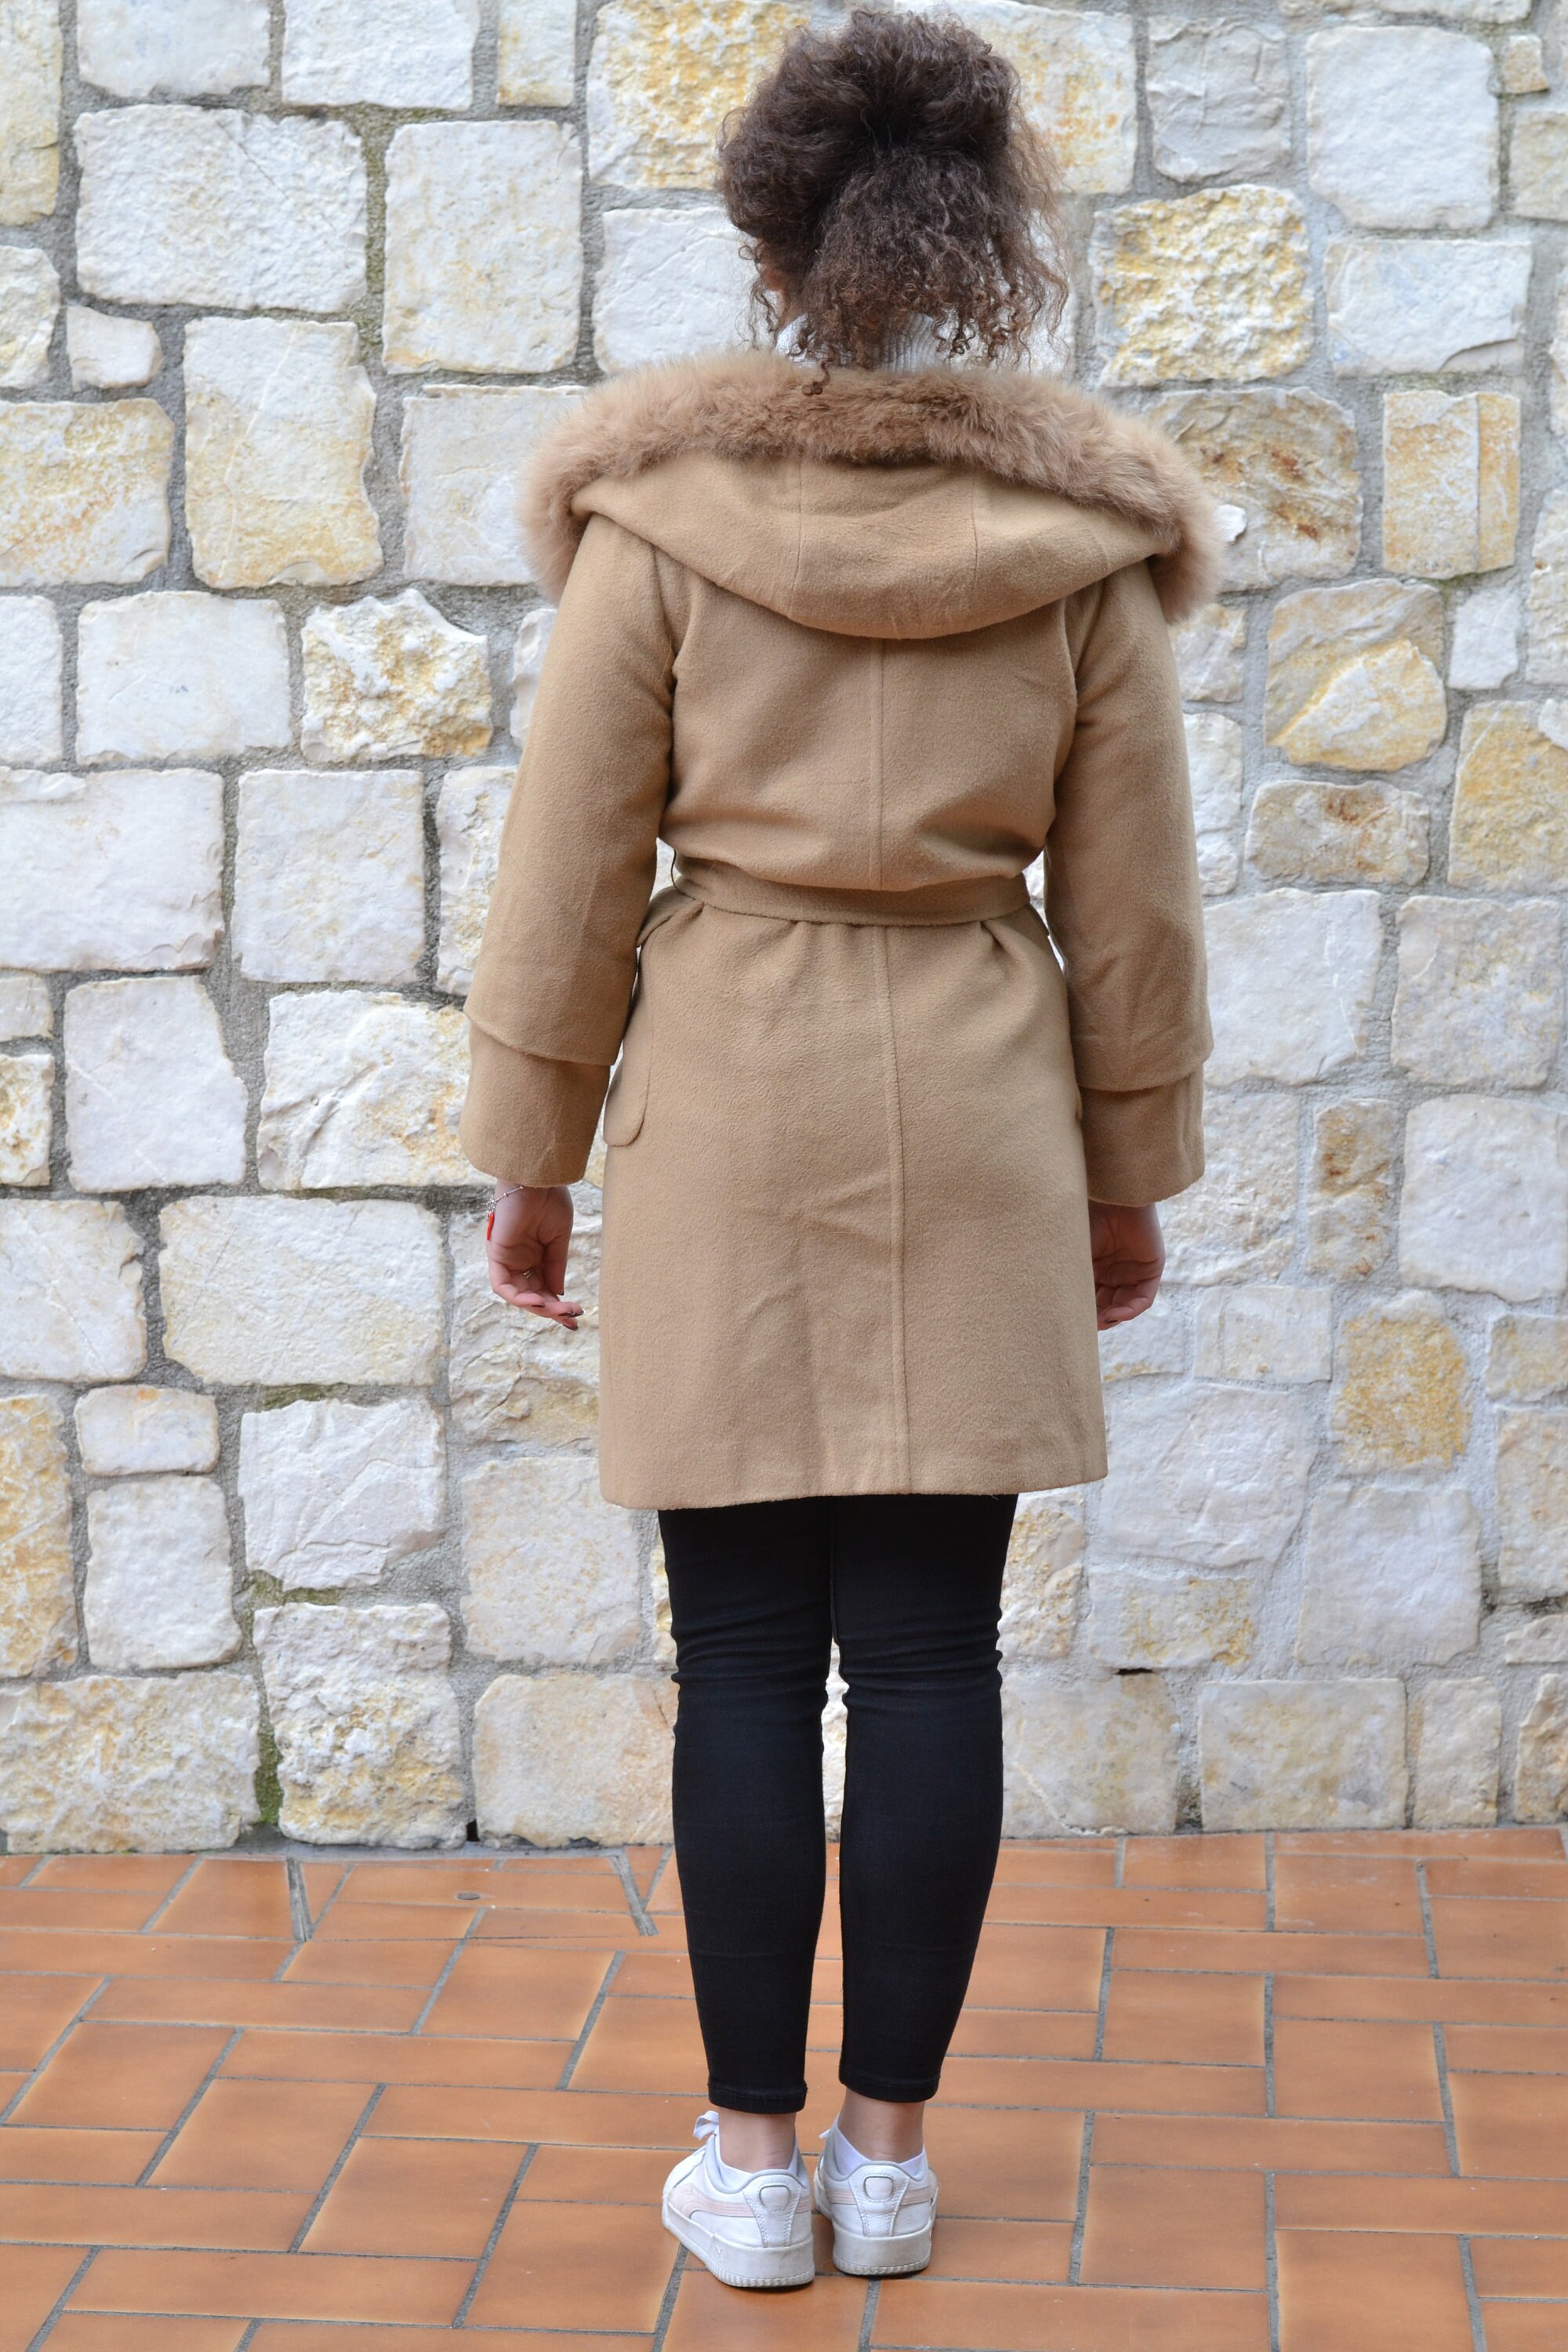 Cappotto cammello lana cashmere cappuccio – Angelico